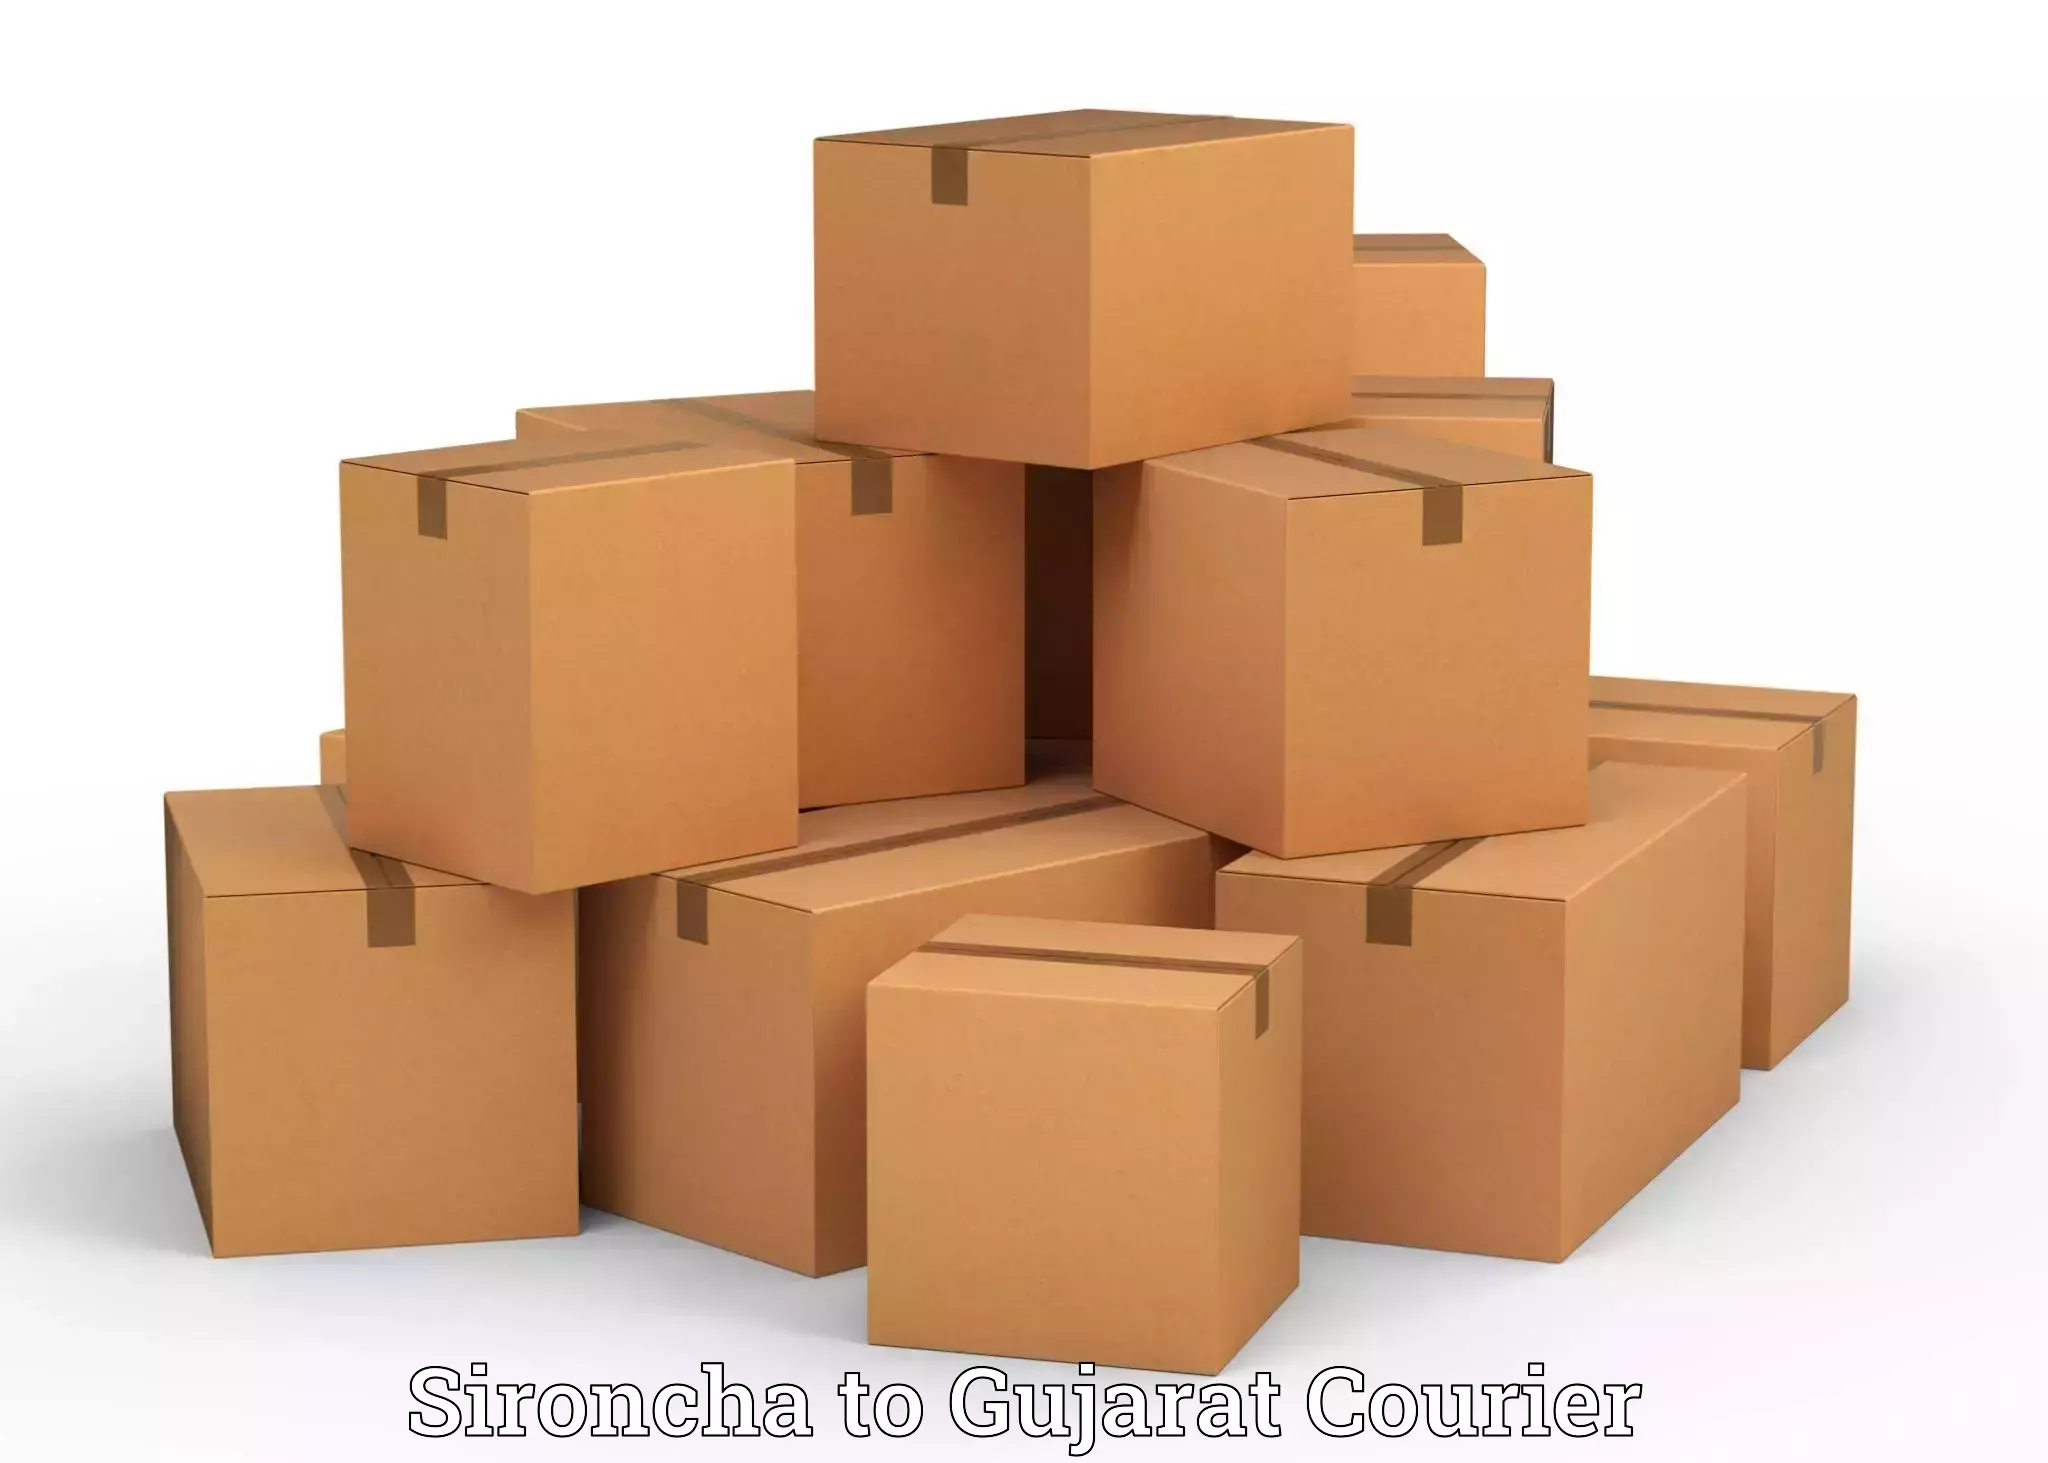 Baggage shipping service Sironcha to Gujarat